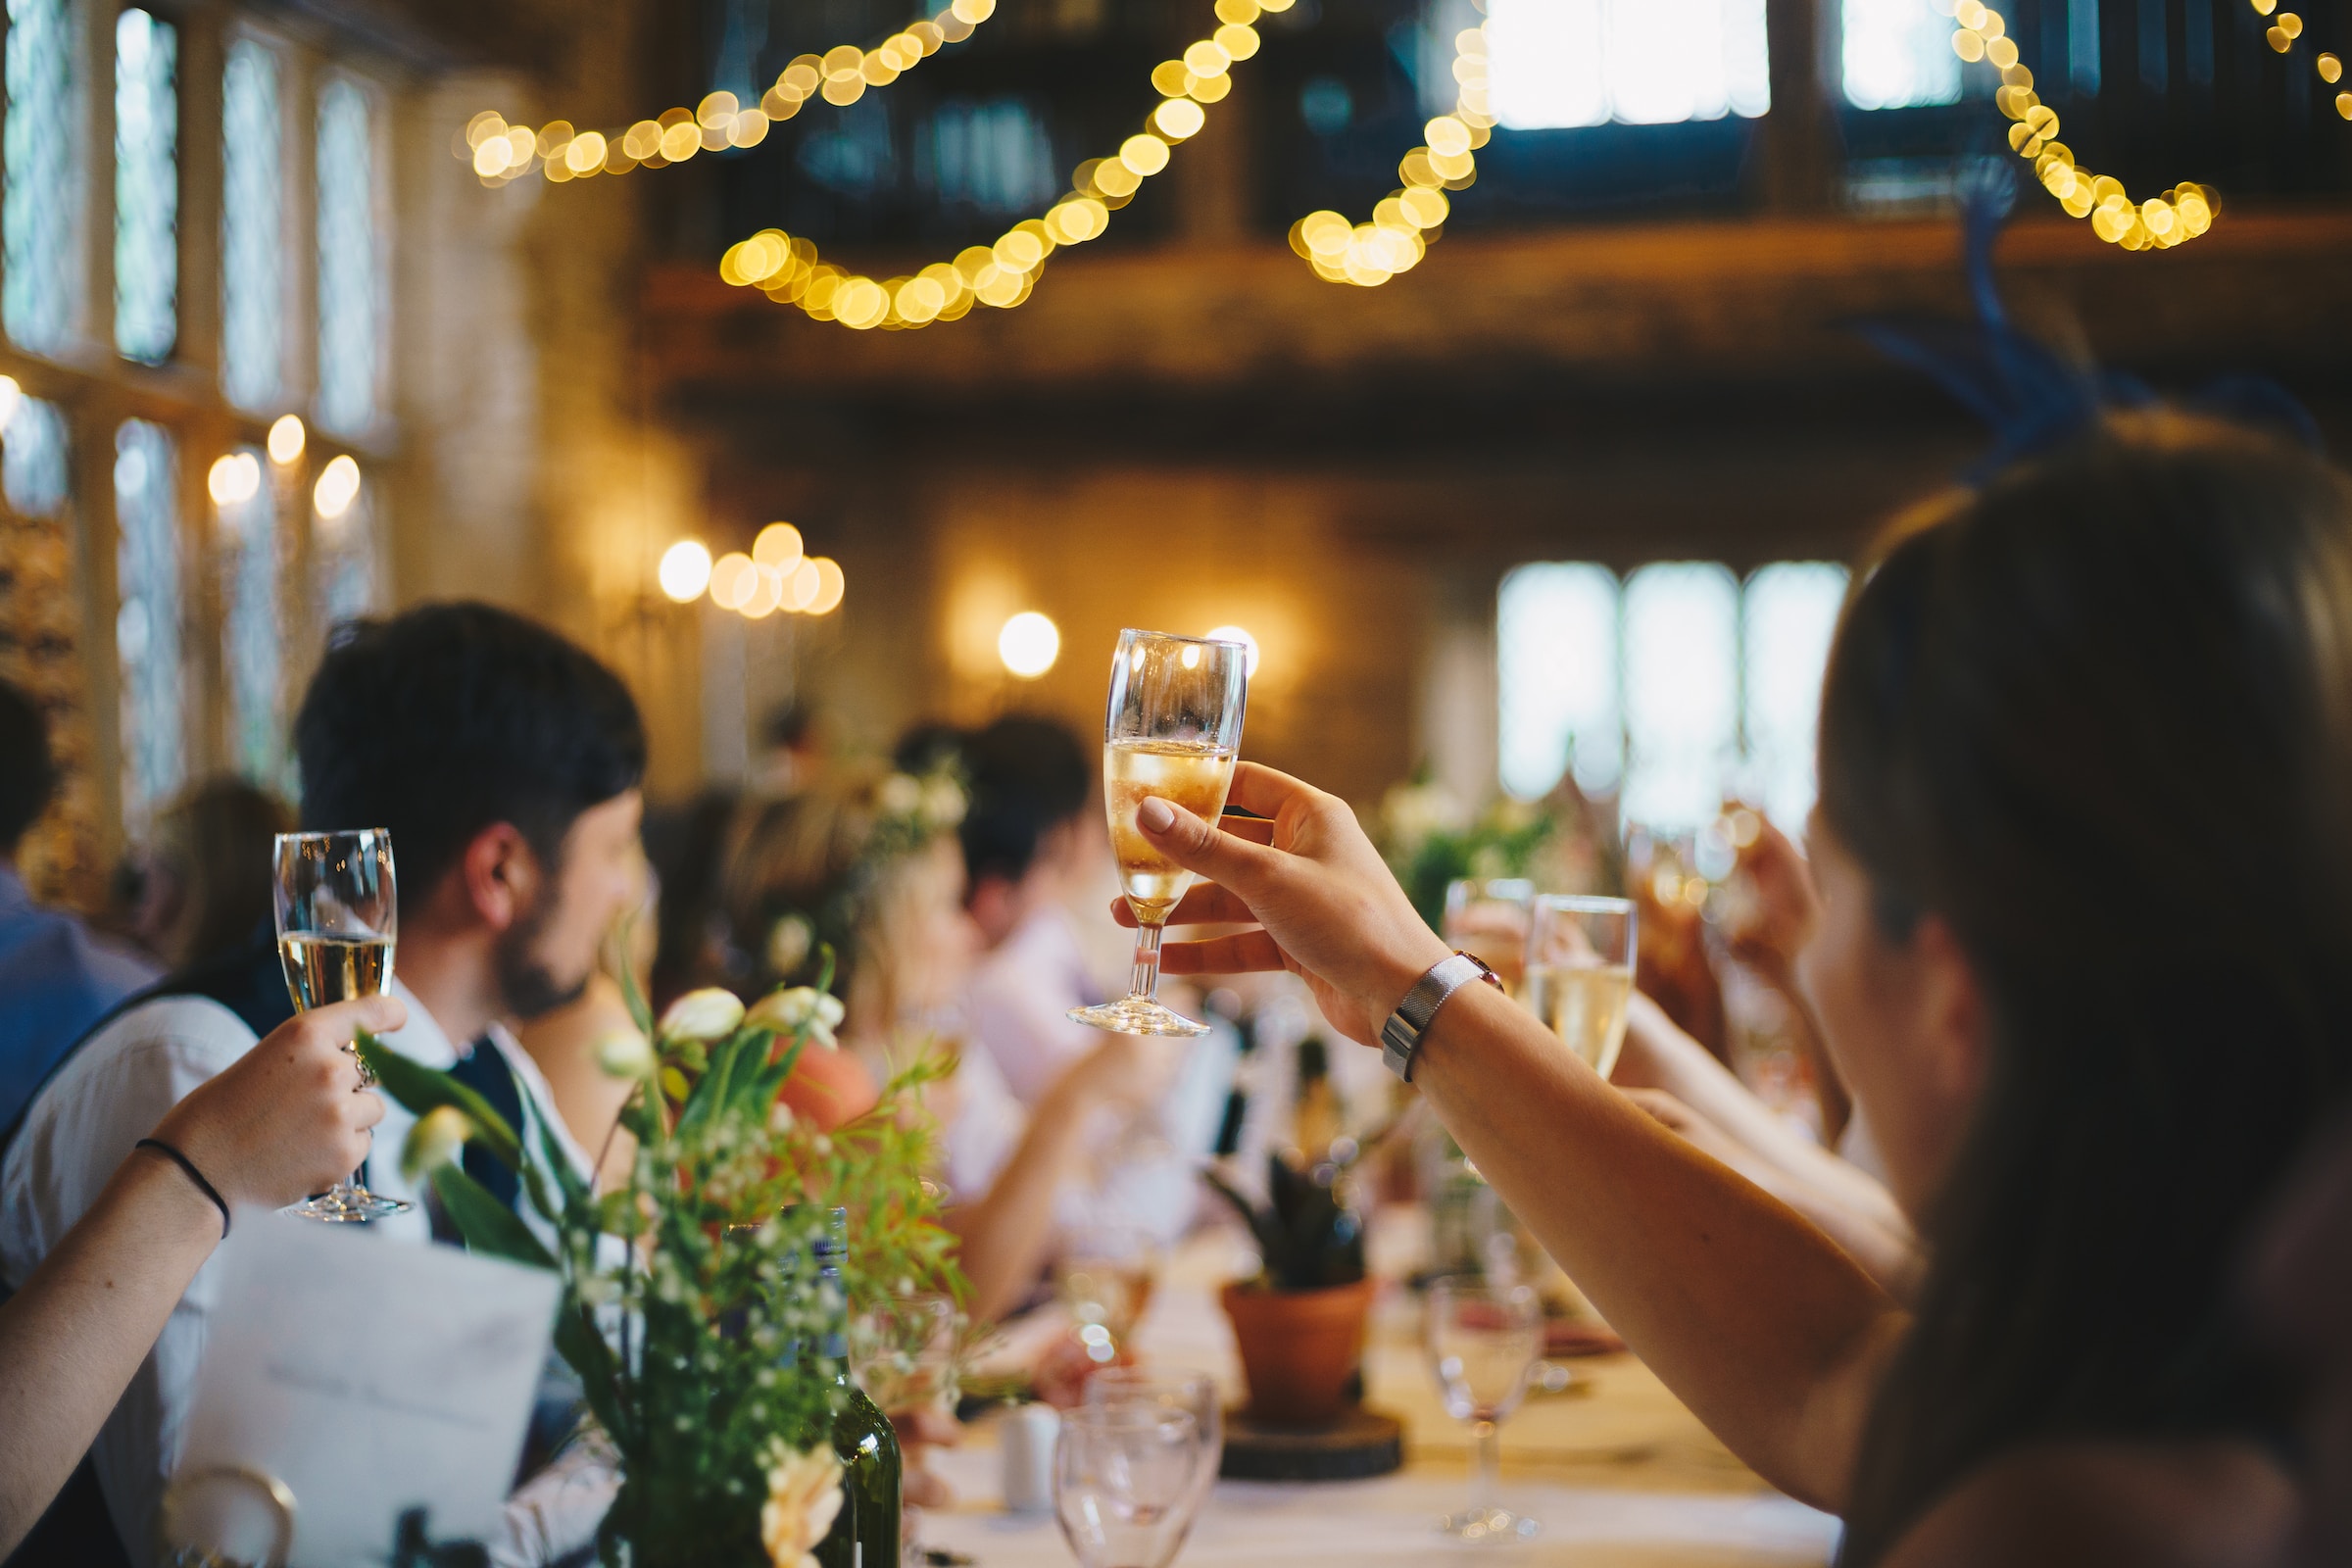 Wedding reception | Source: Unsplash